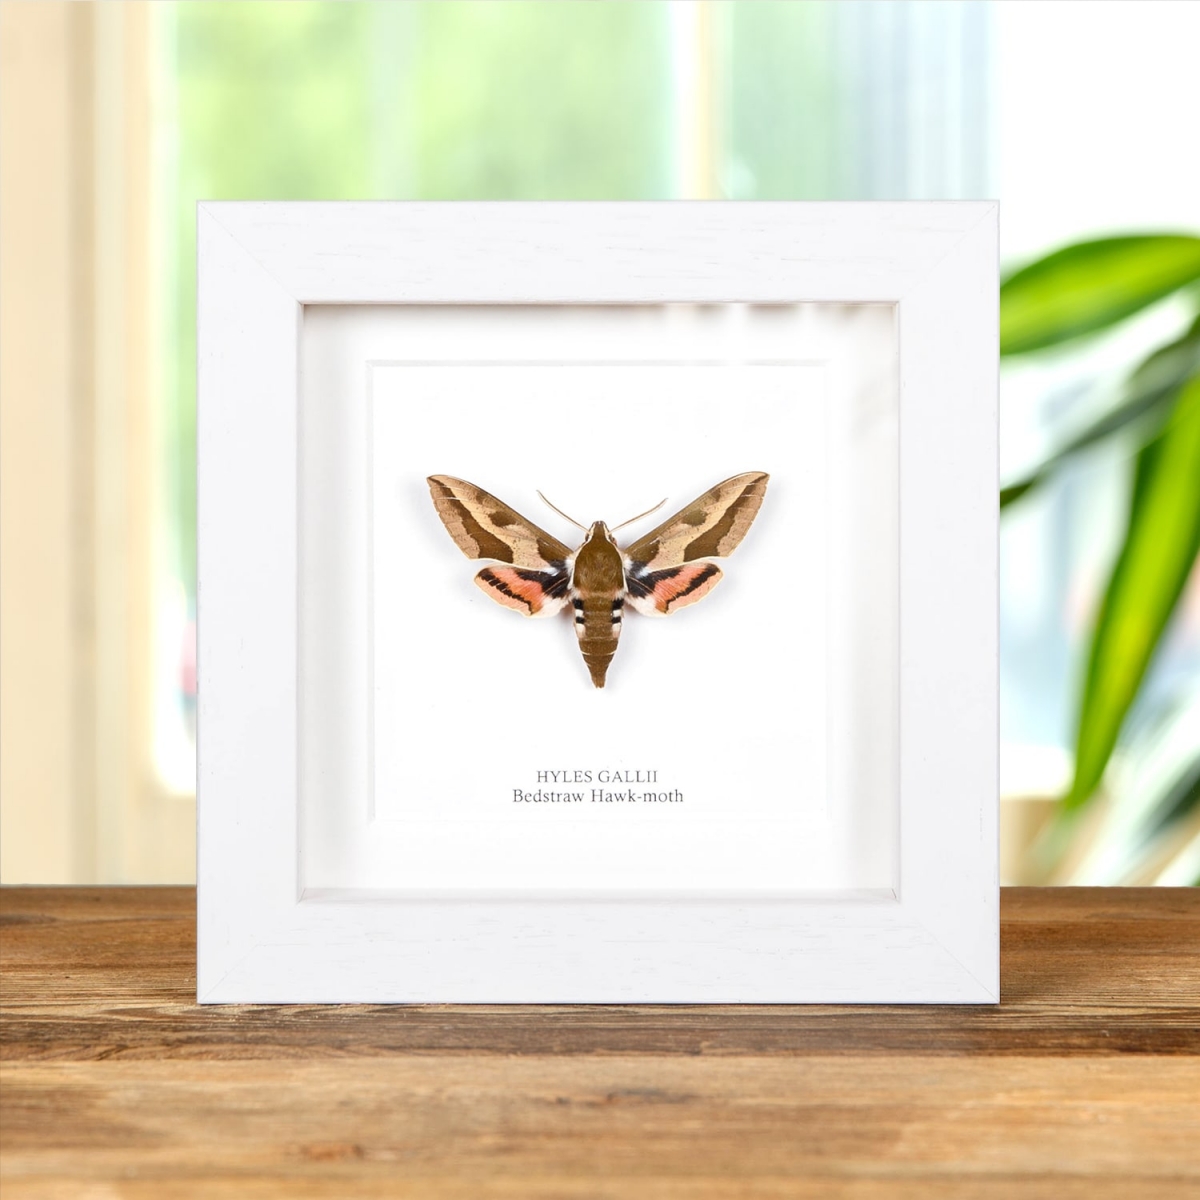 Bedstraw Hawk-moth in Box Frame (Hyles gallii)